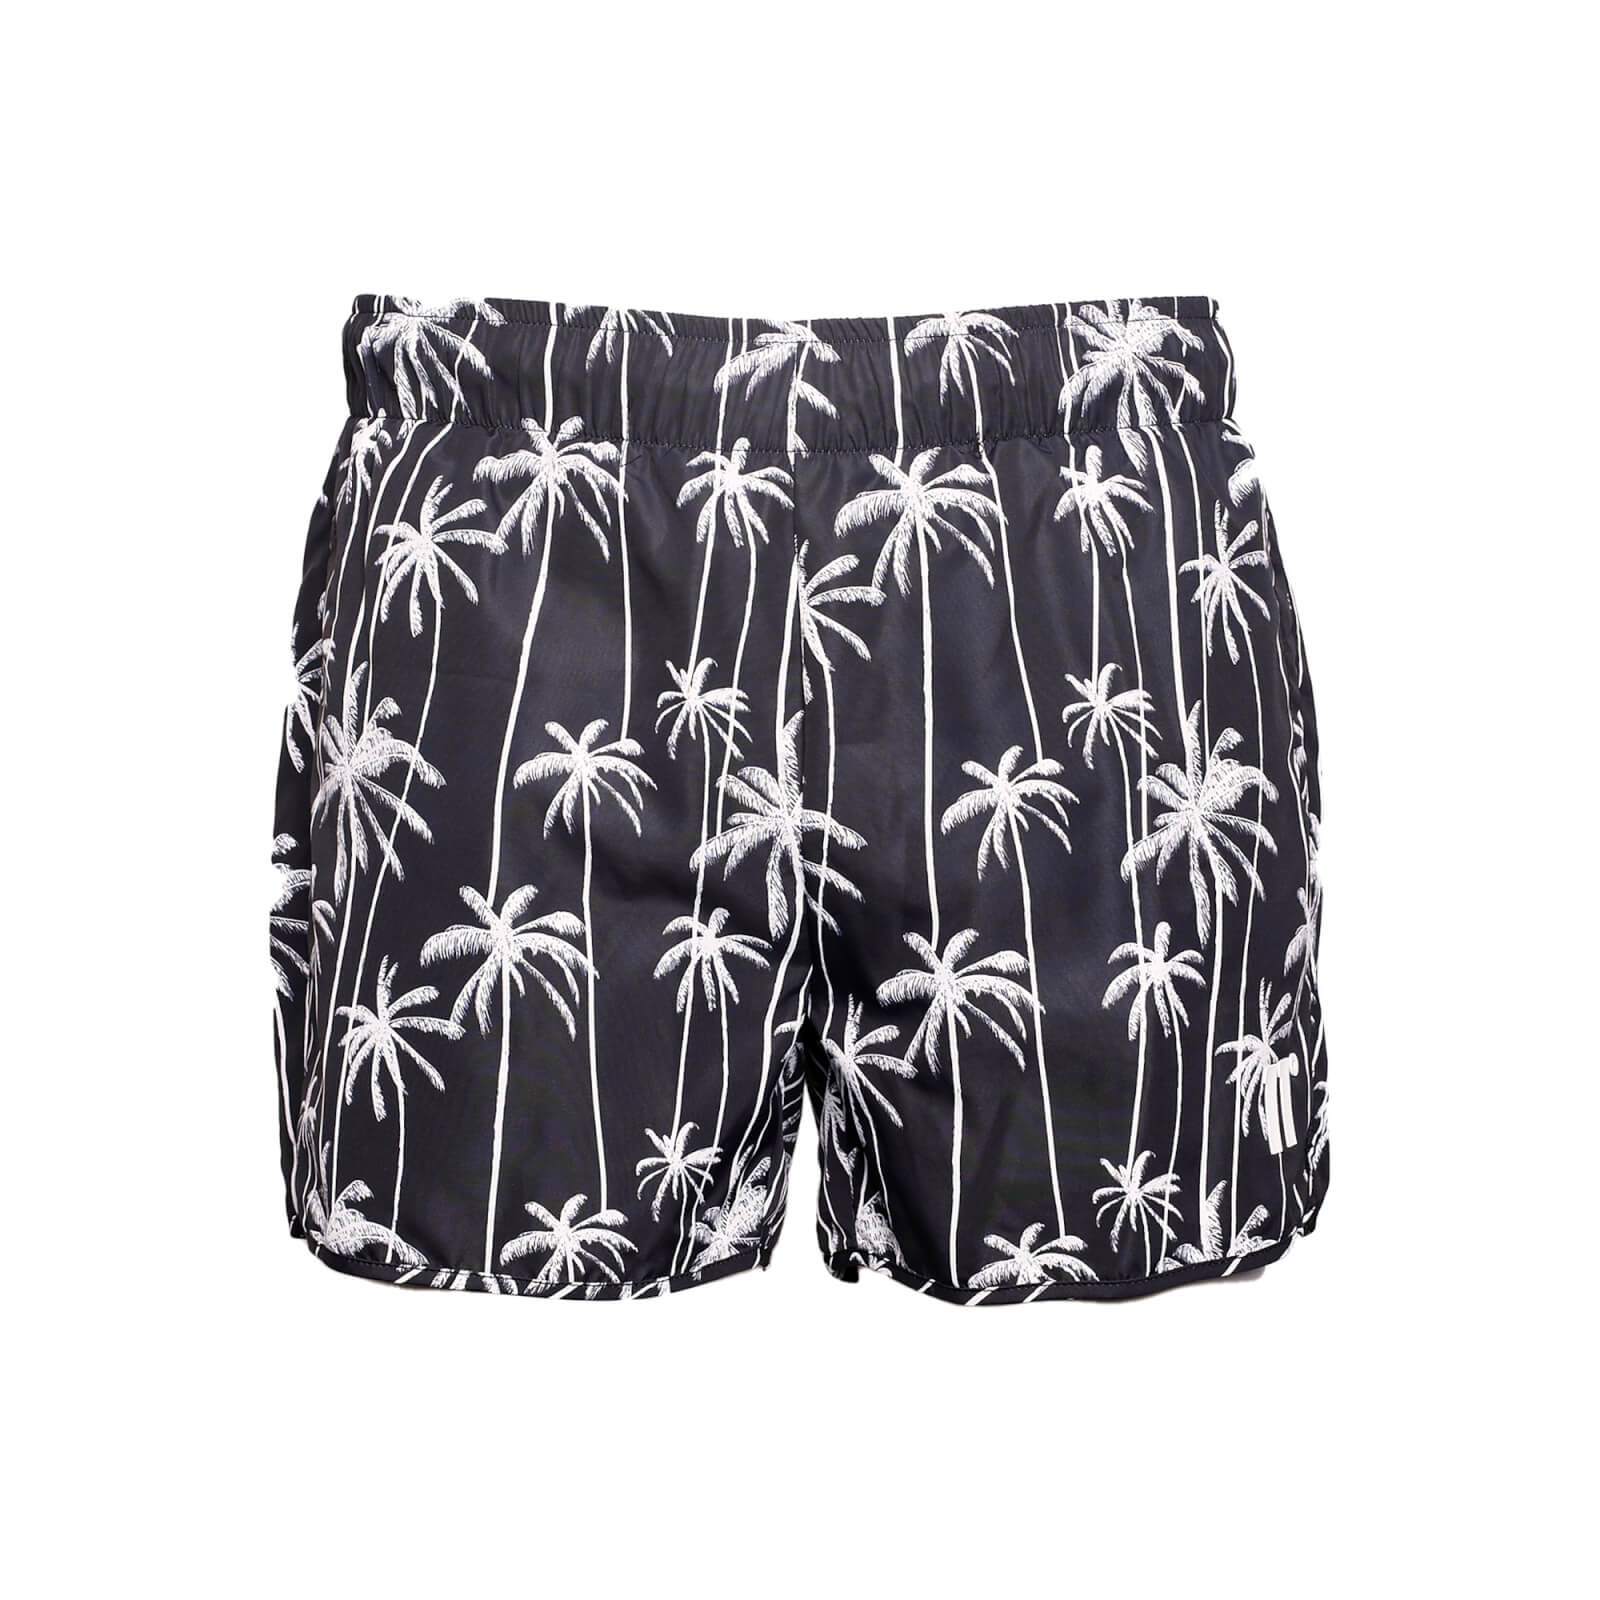 heat fl swim shorts – black - s